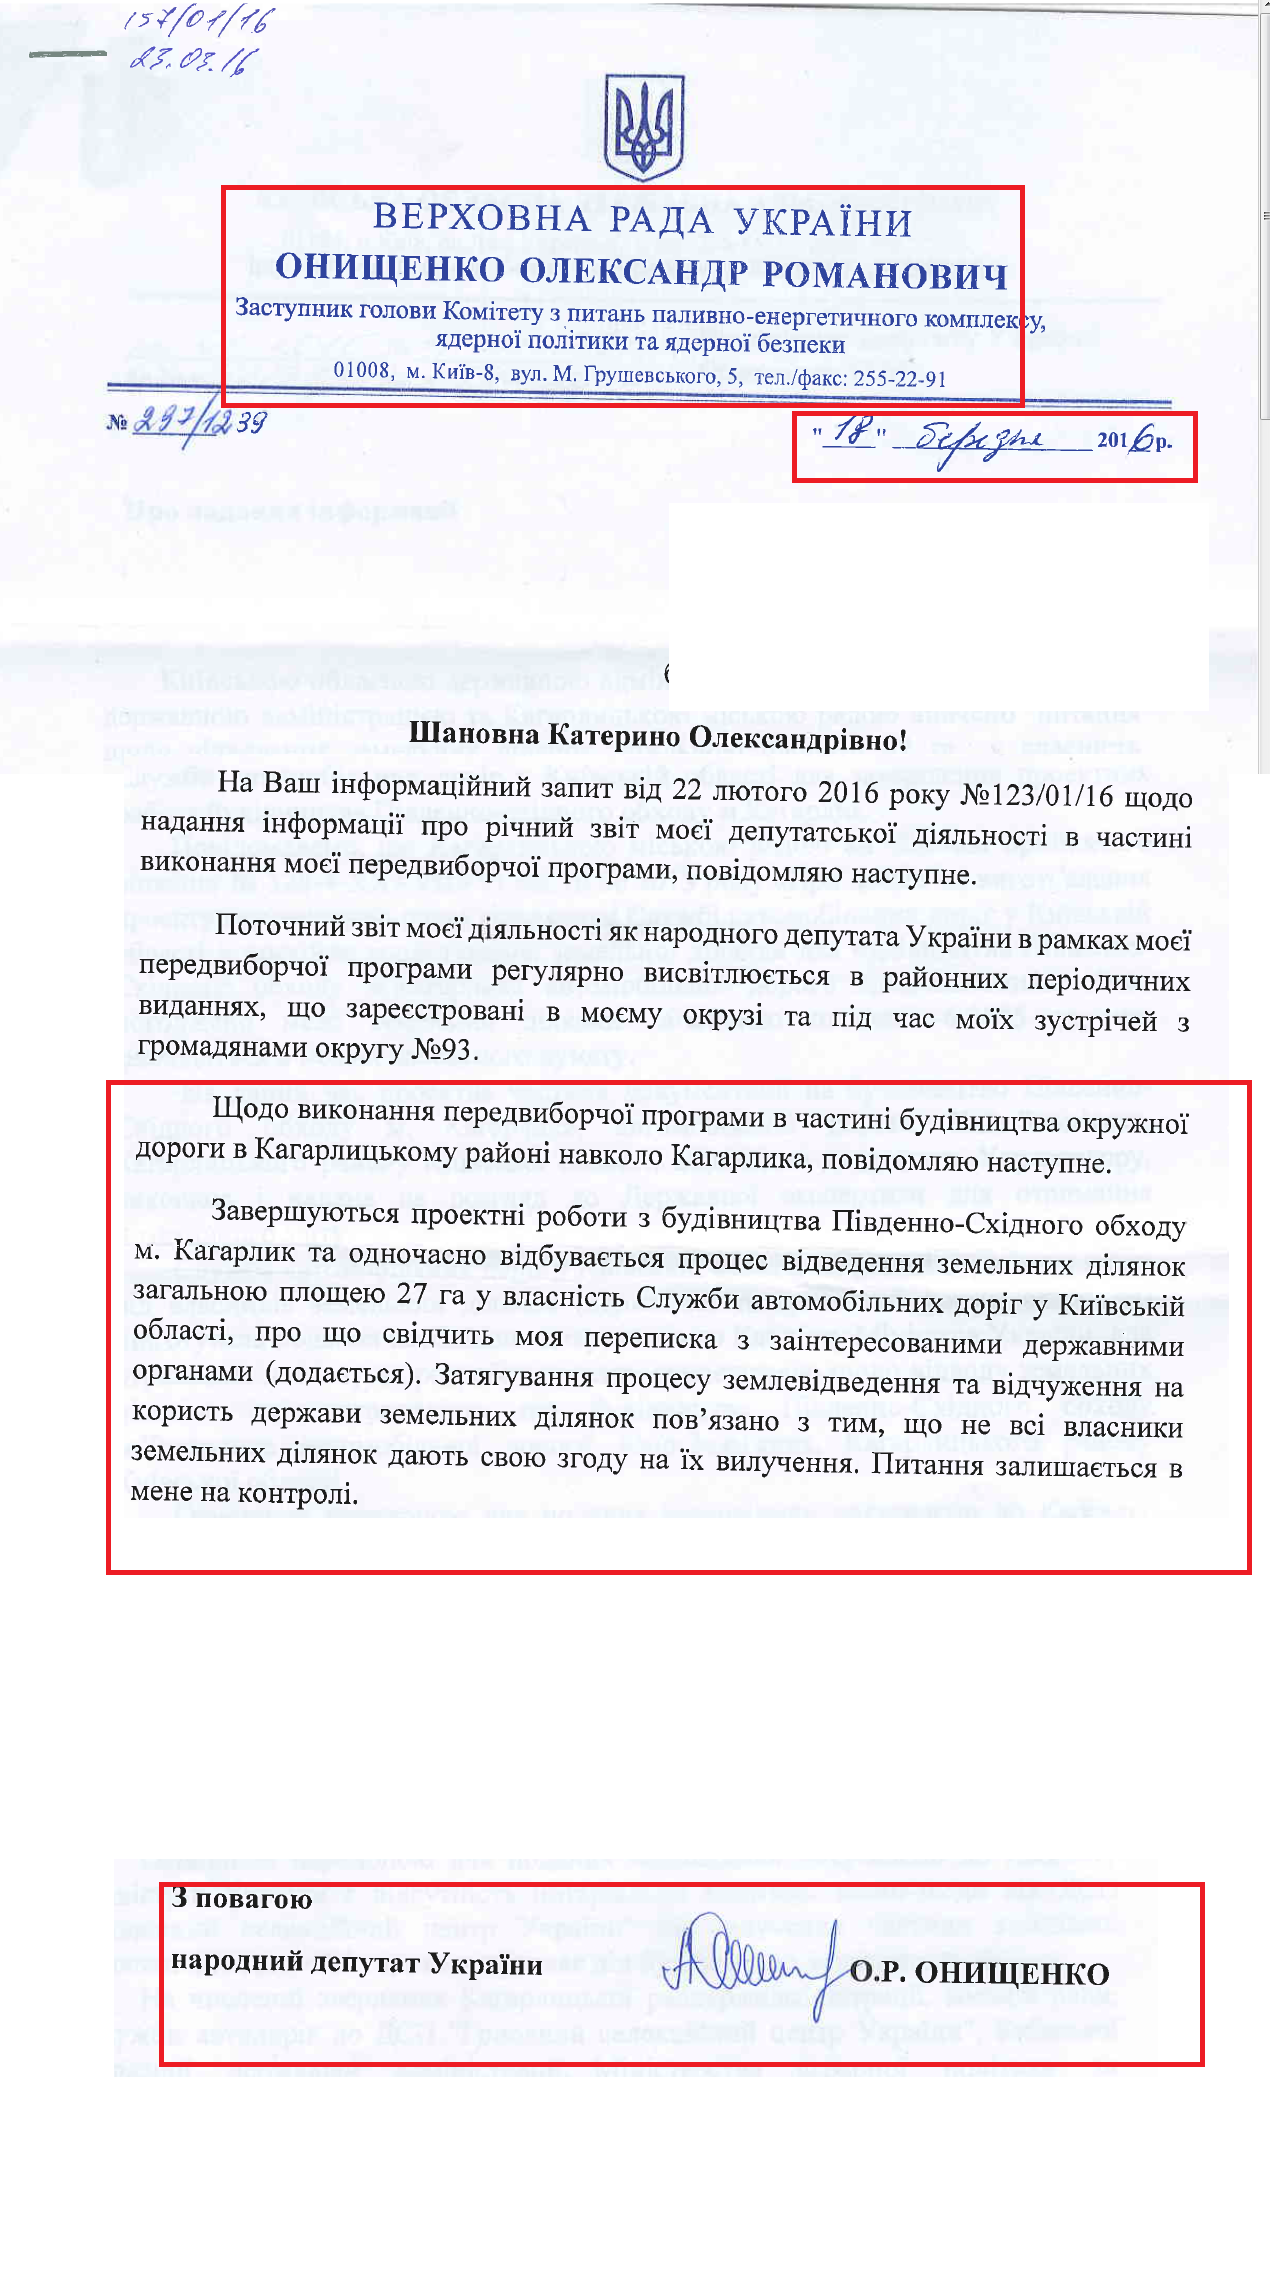 лист народного депутата Онищенко Олександра